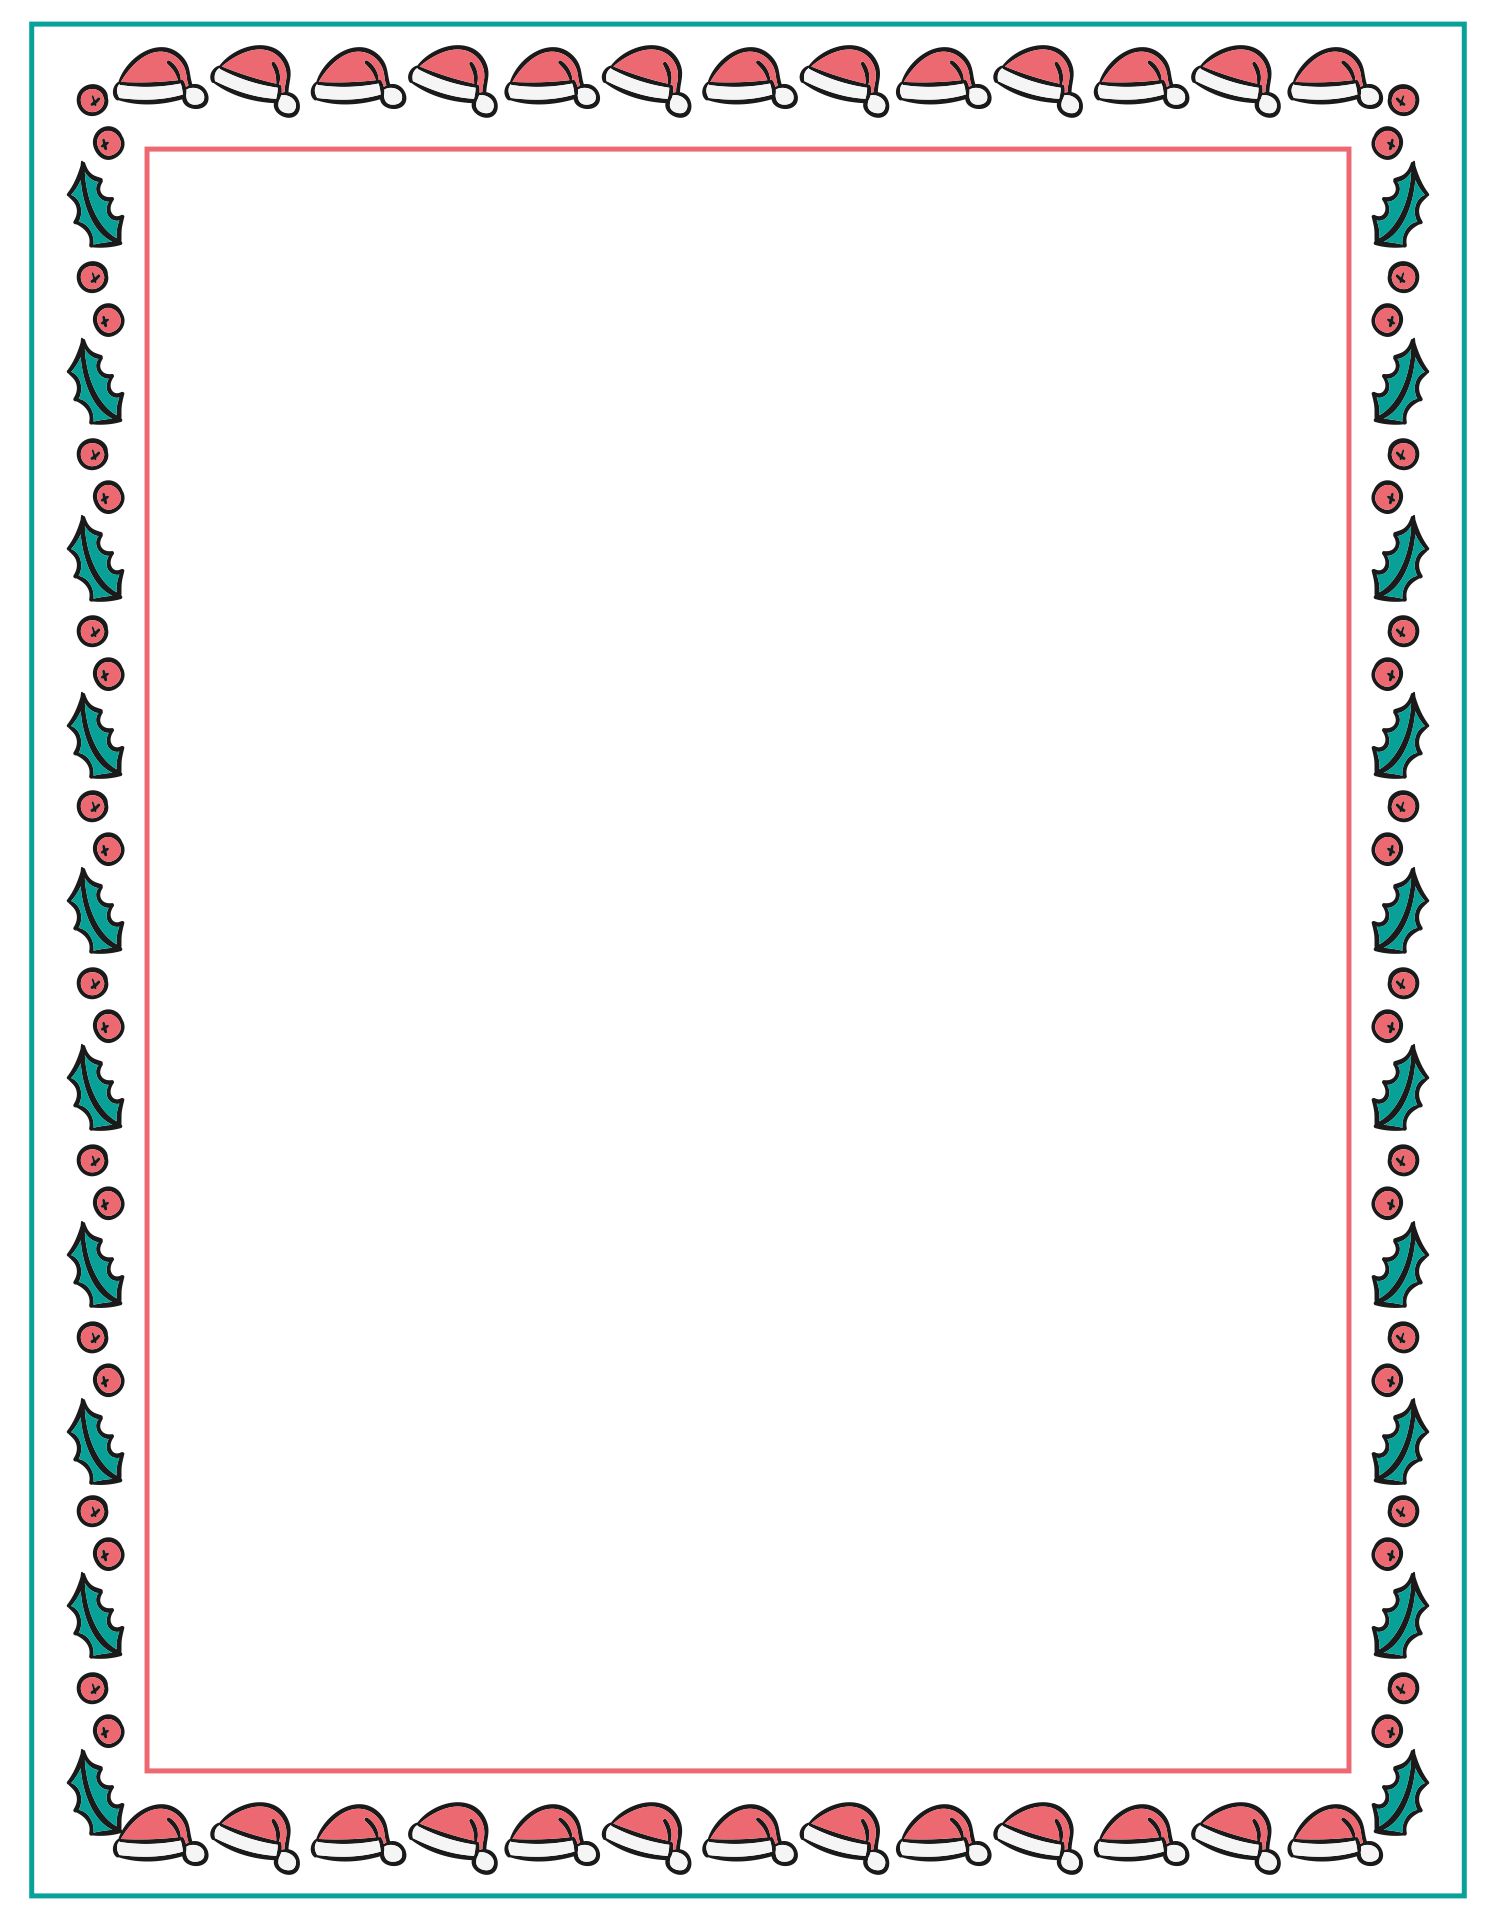 Printable Christmas Border Templates - Printable JD